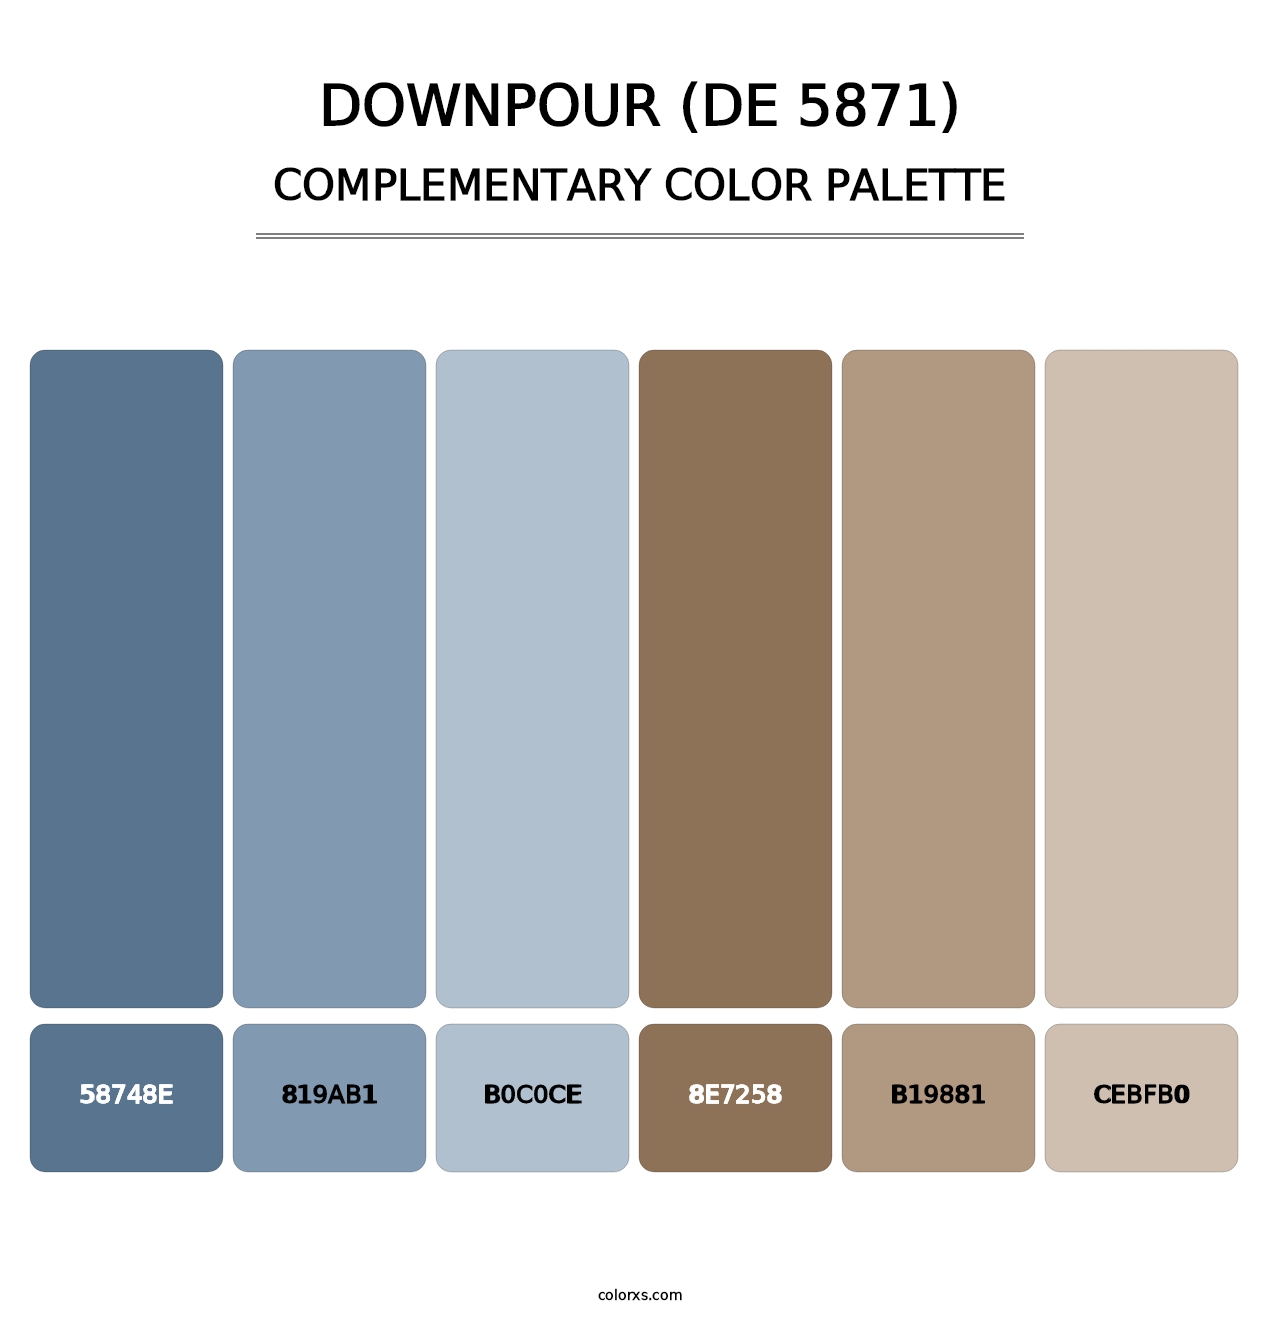 Downpour (DE 5871) - Complementary Color Palette